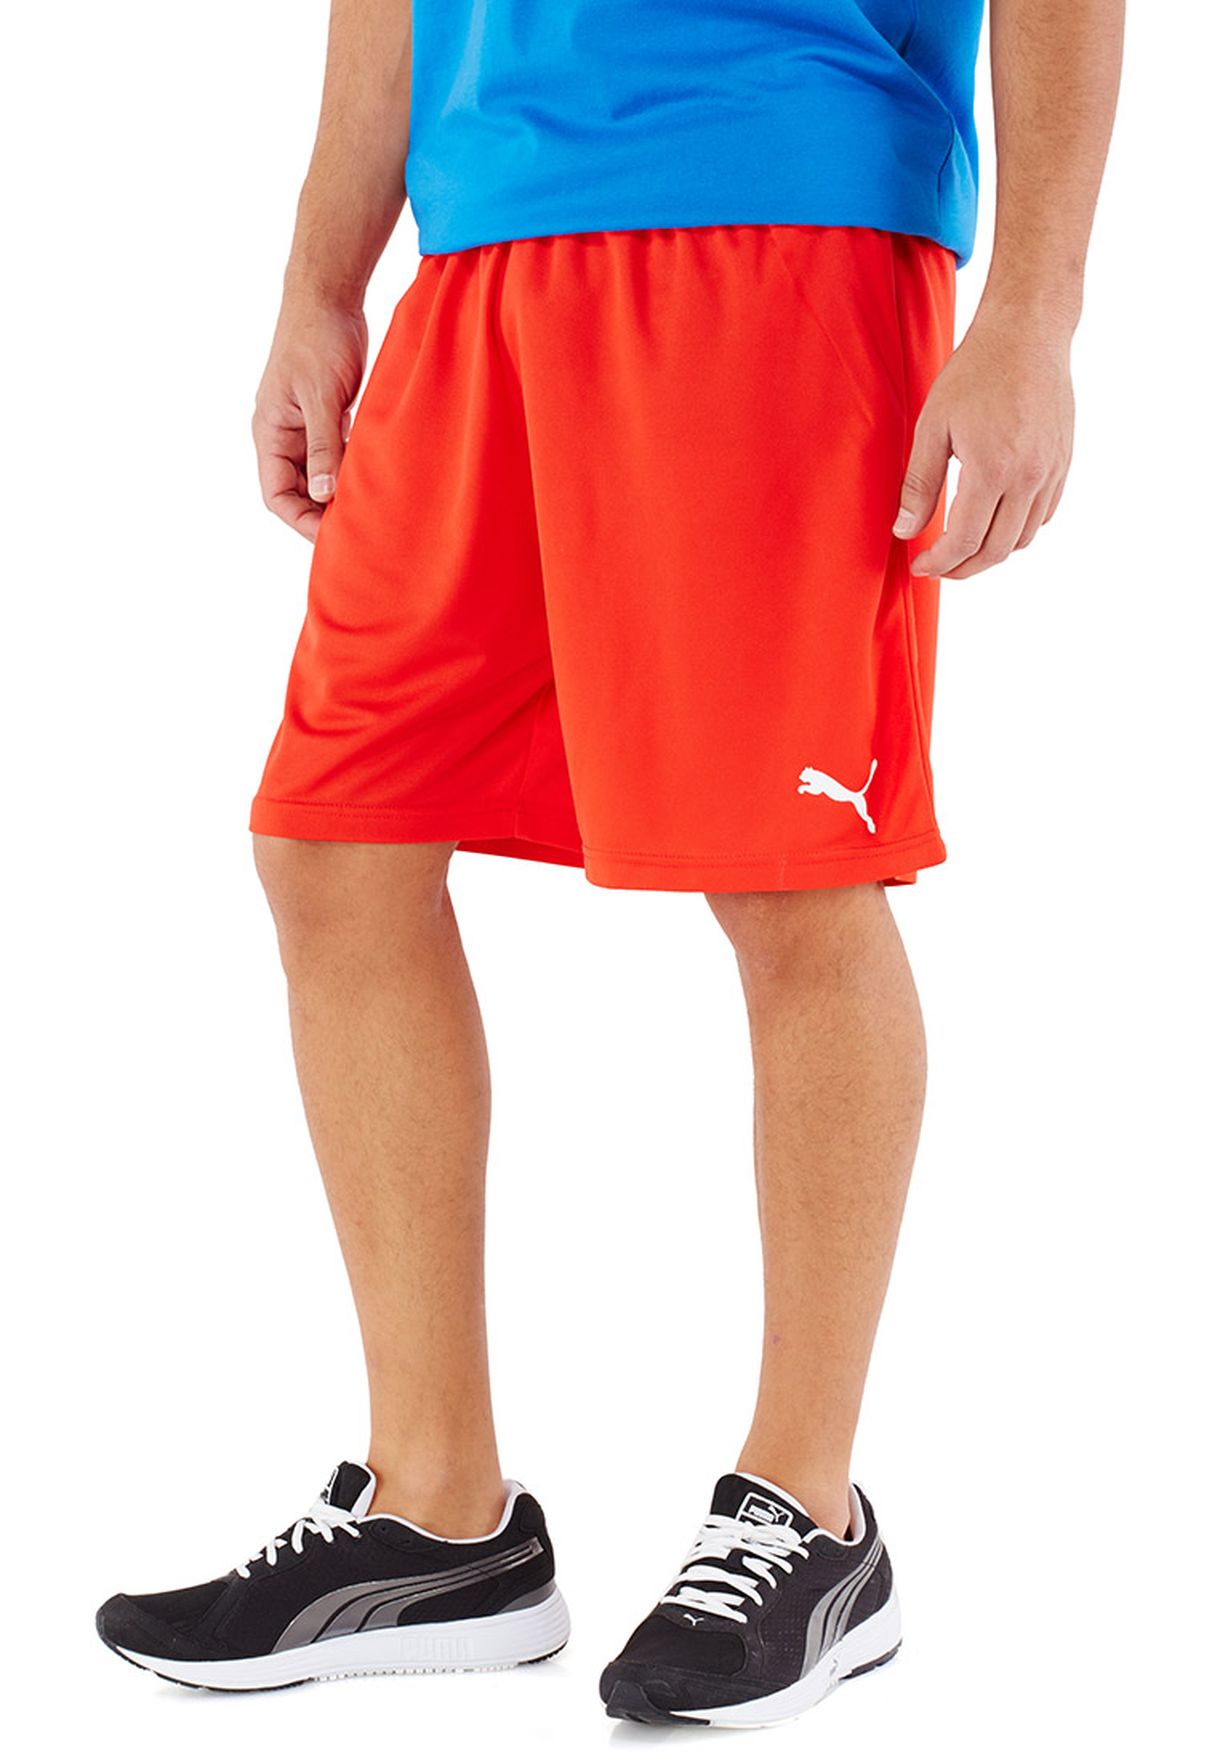 puma men's bts shorts